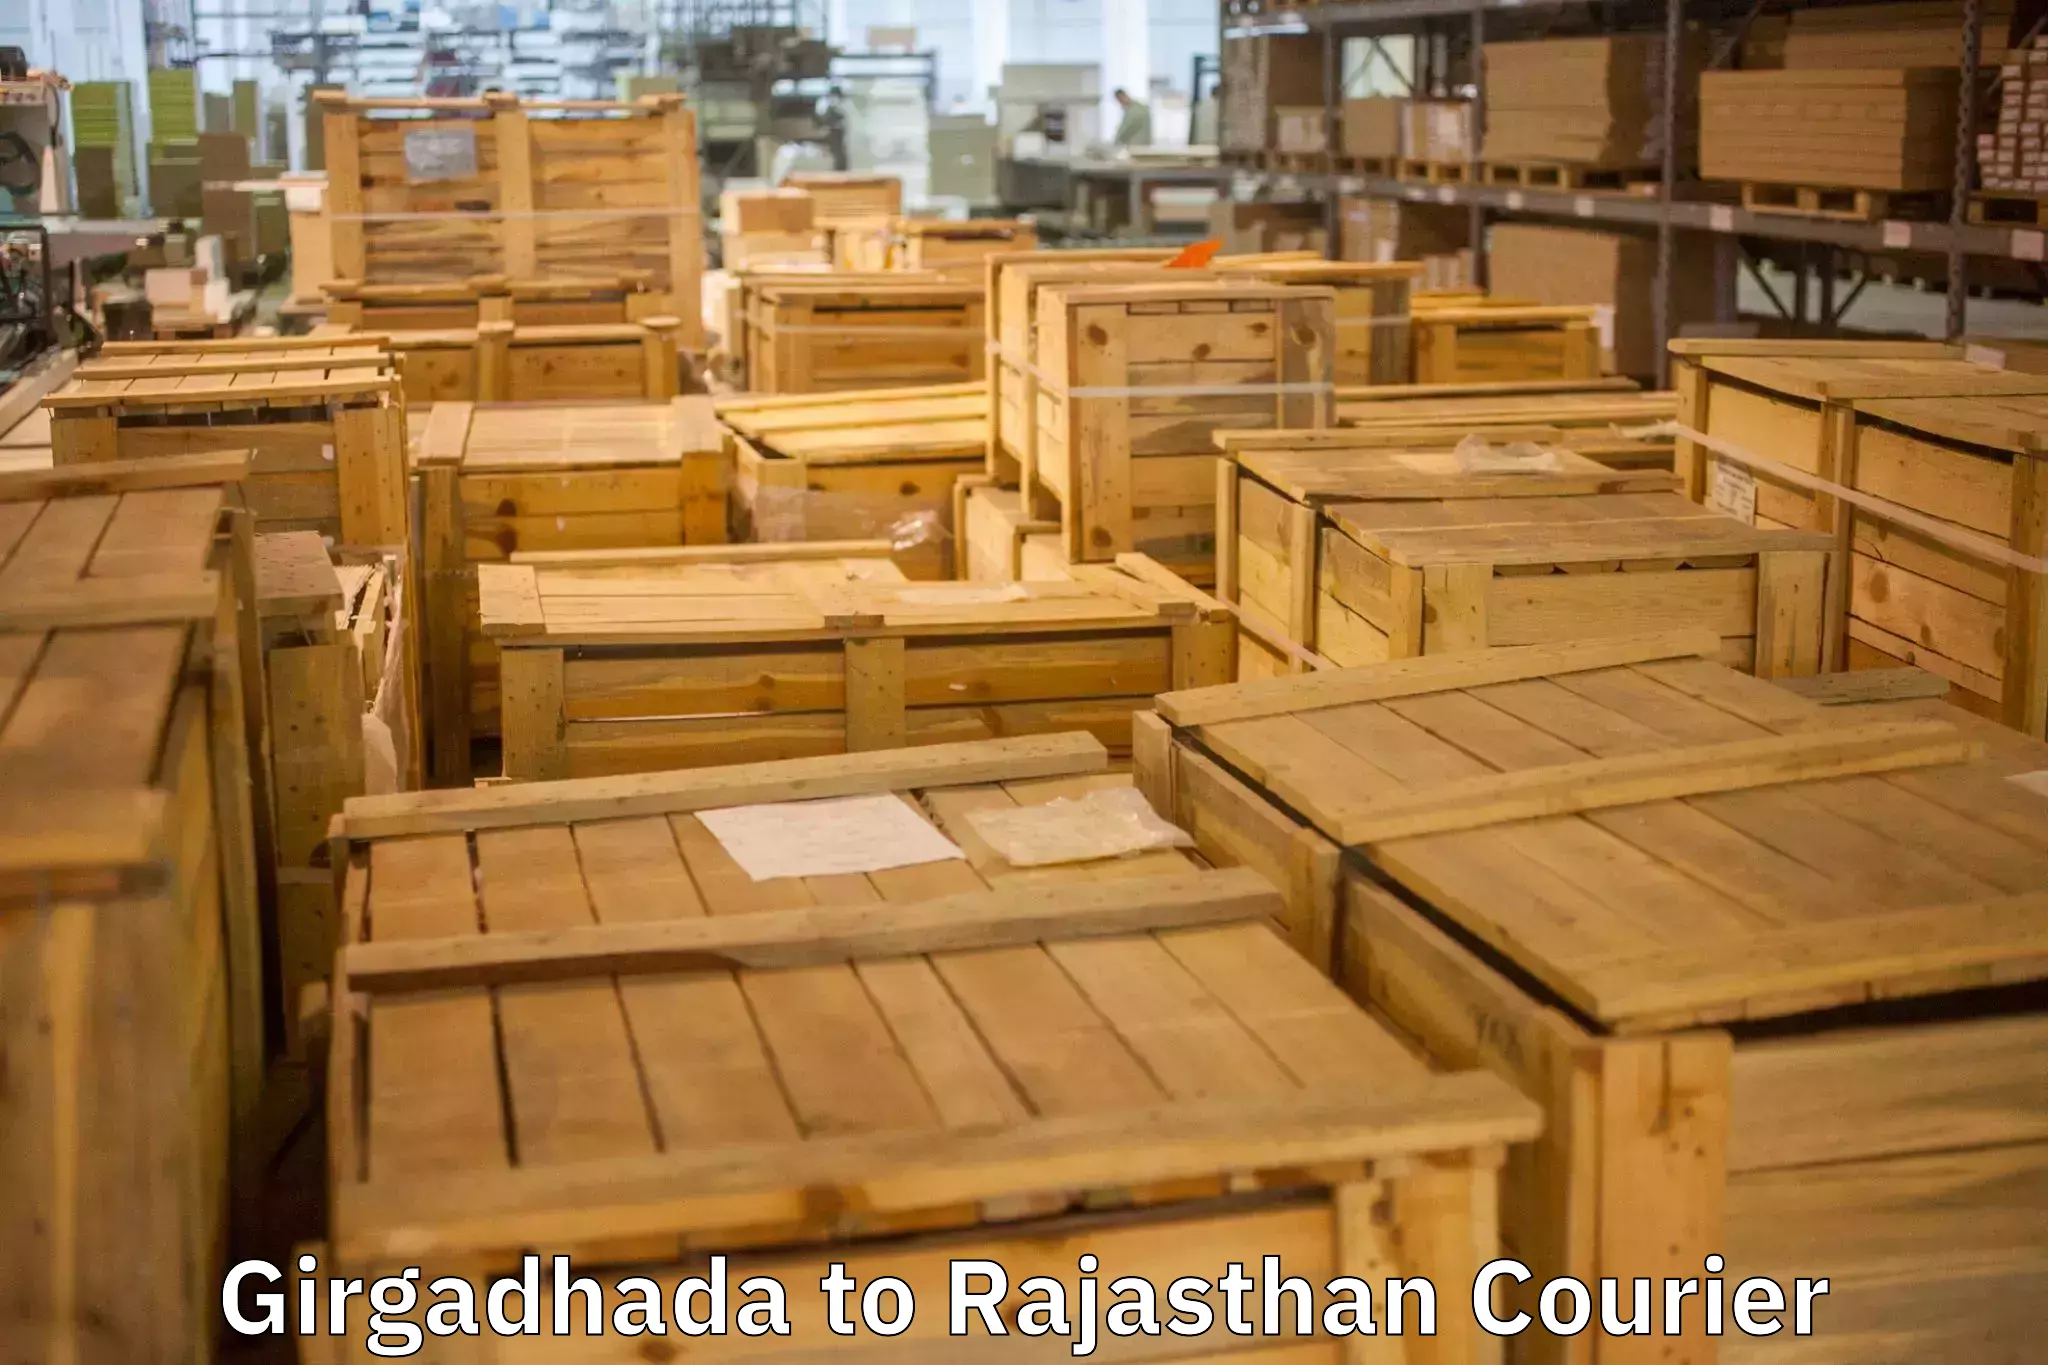 Premium furniture transport Girgadhada to Rajasthan